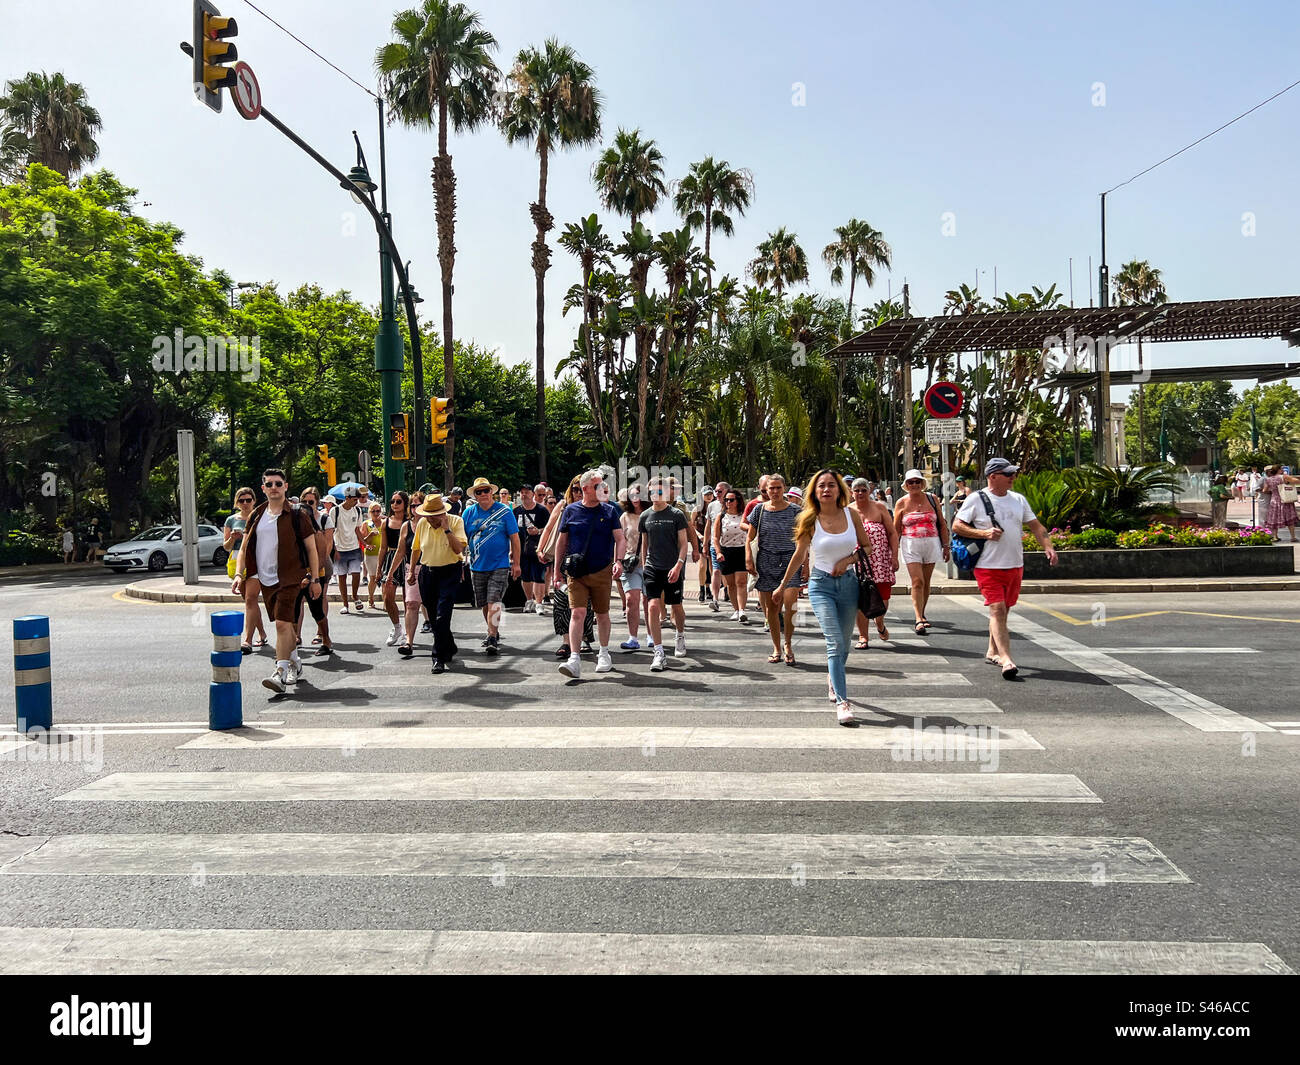 Fußgänger auf Zebraüberquerung in Malaga Spanien Stockfoto